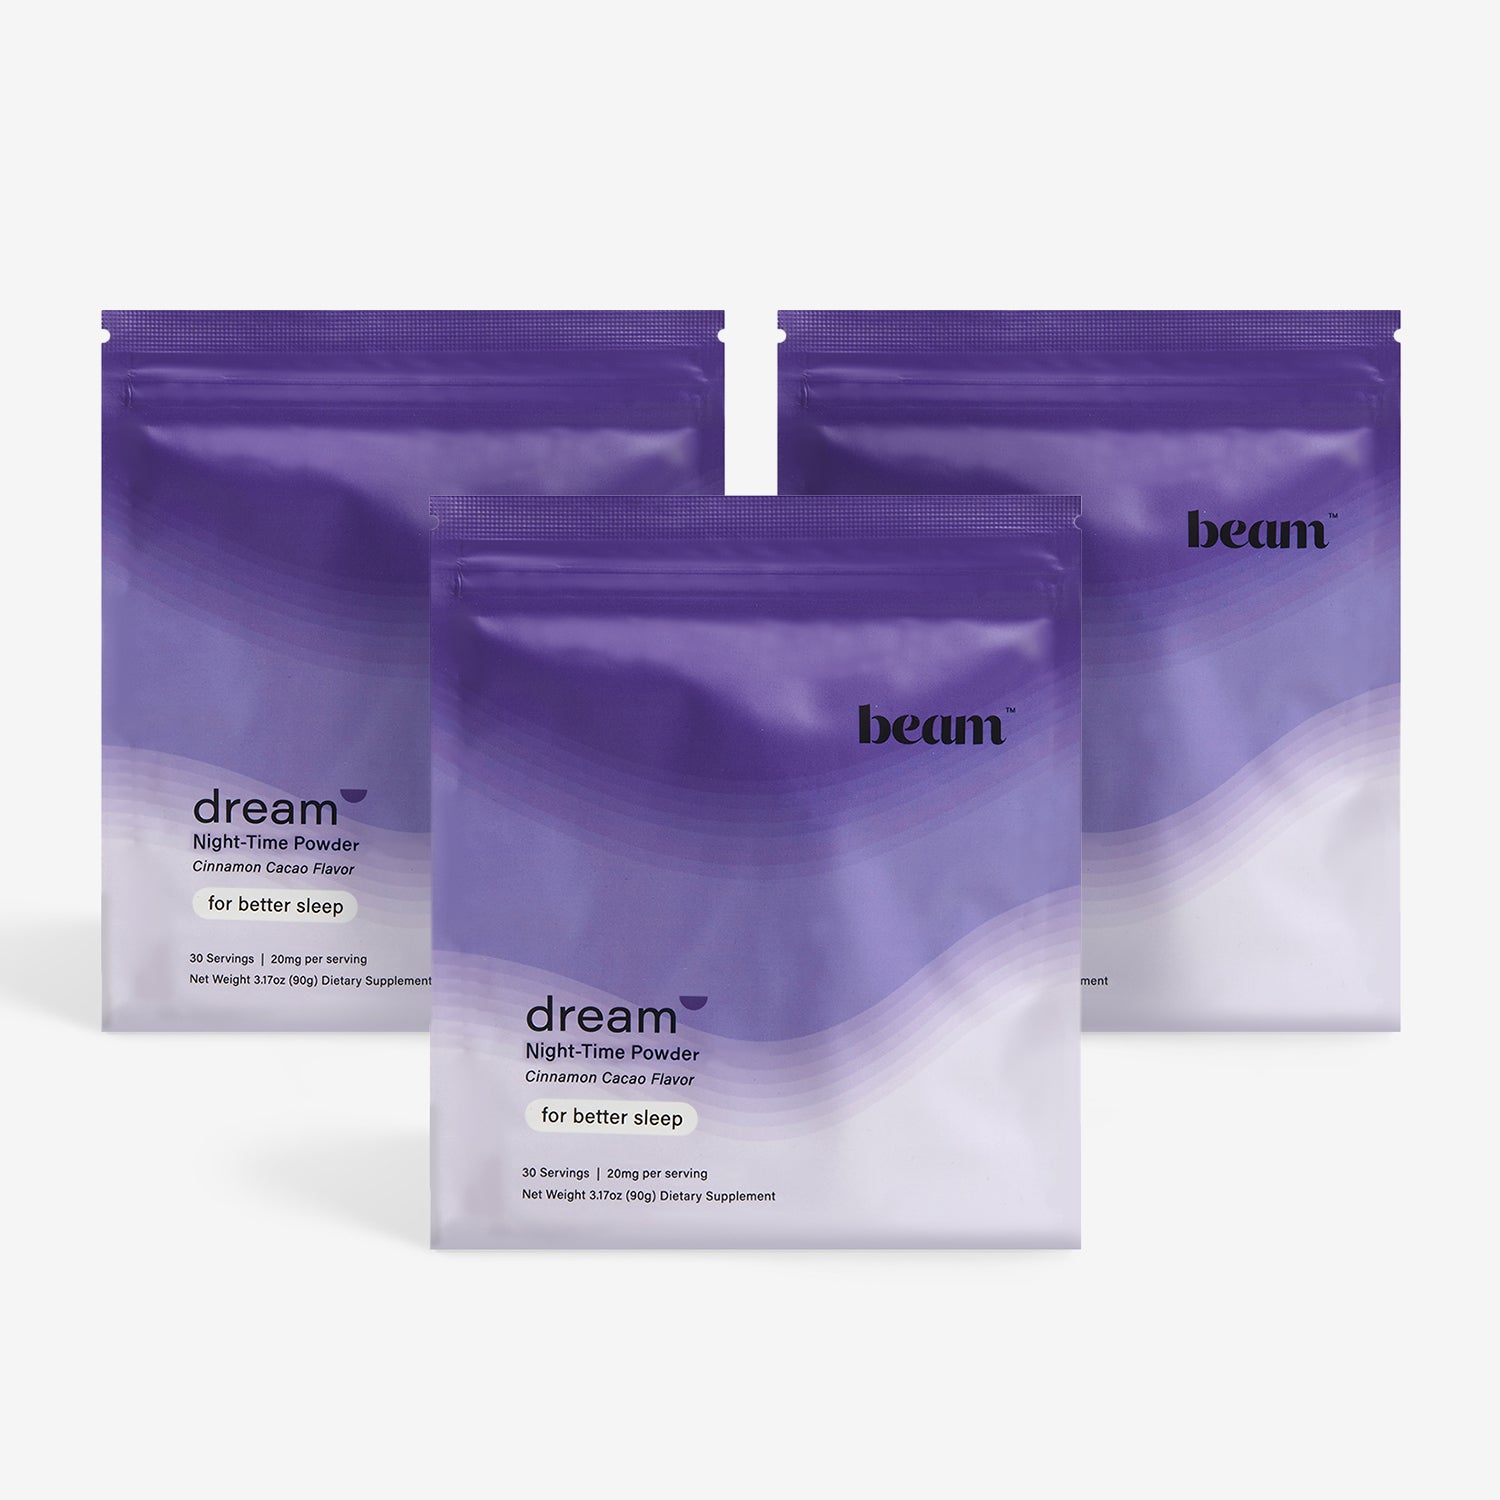 Dream Powder — save 30%, 3-month supply